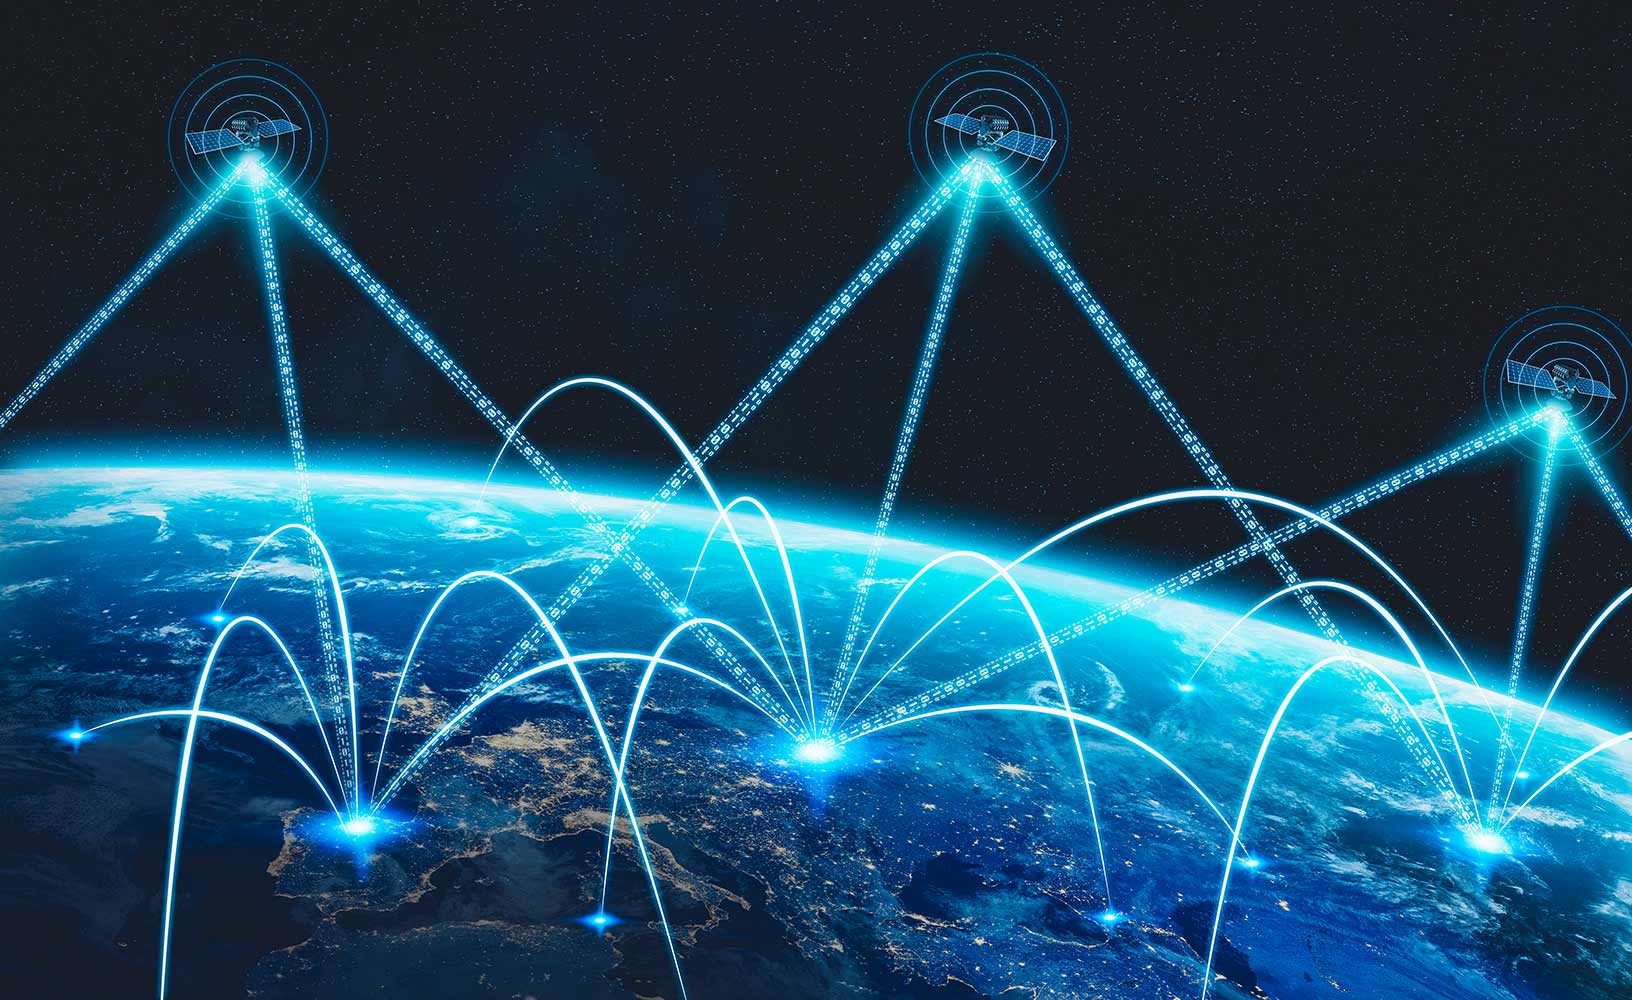 Une constellation de satellites GNSS diffusant leurs signaux vers la terre pour le calcul du positionnement, de la navigation et du timing dans le monde entier.